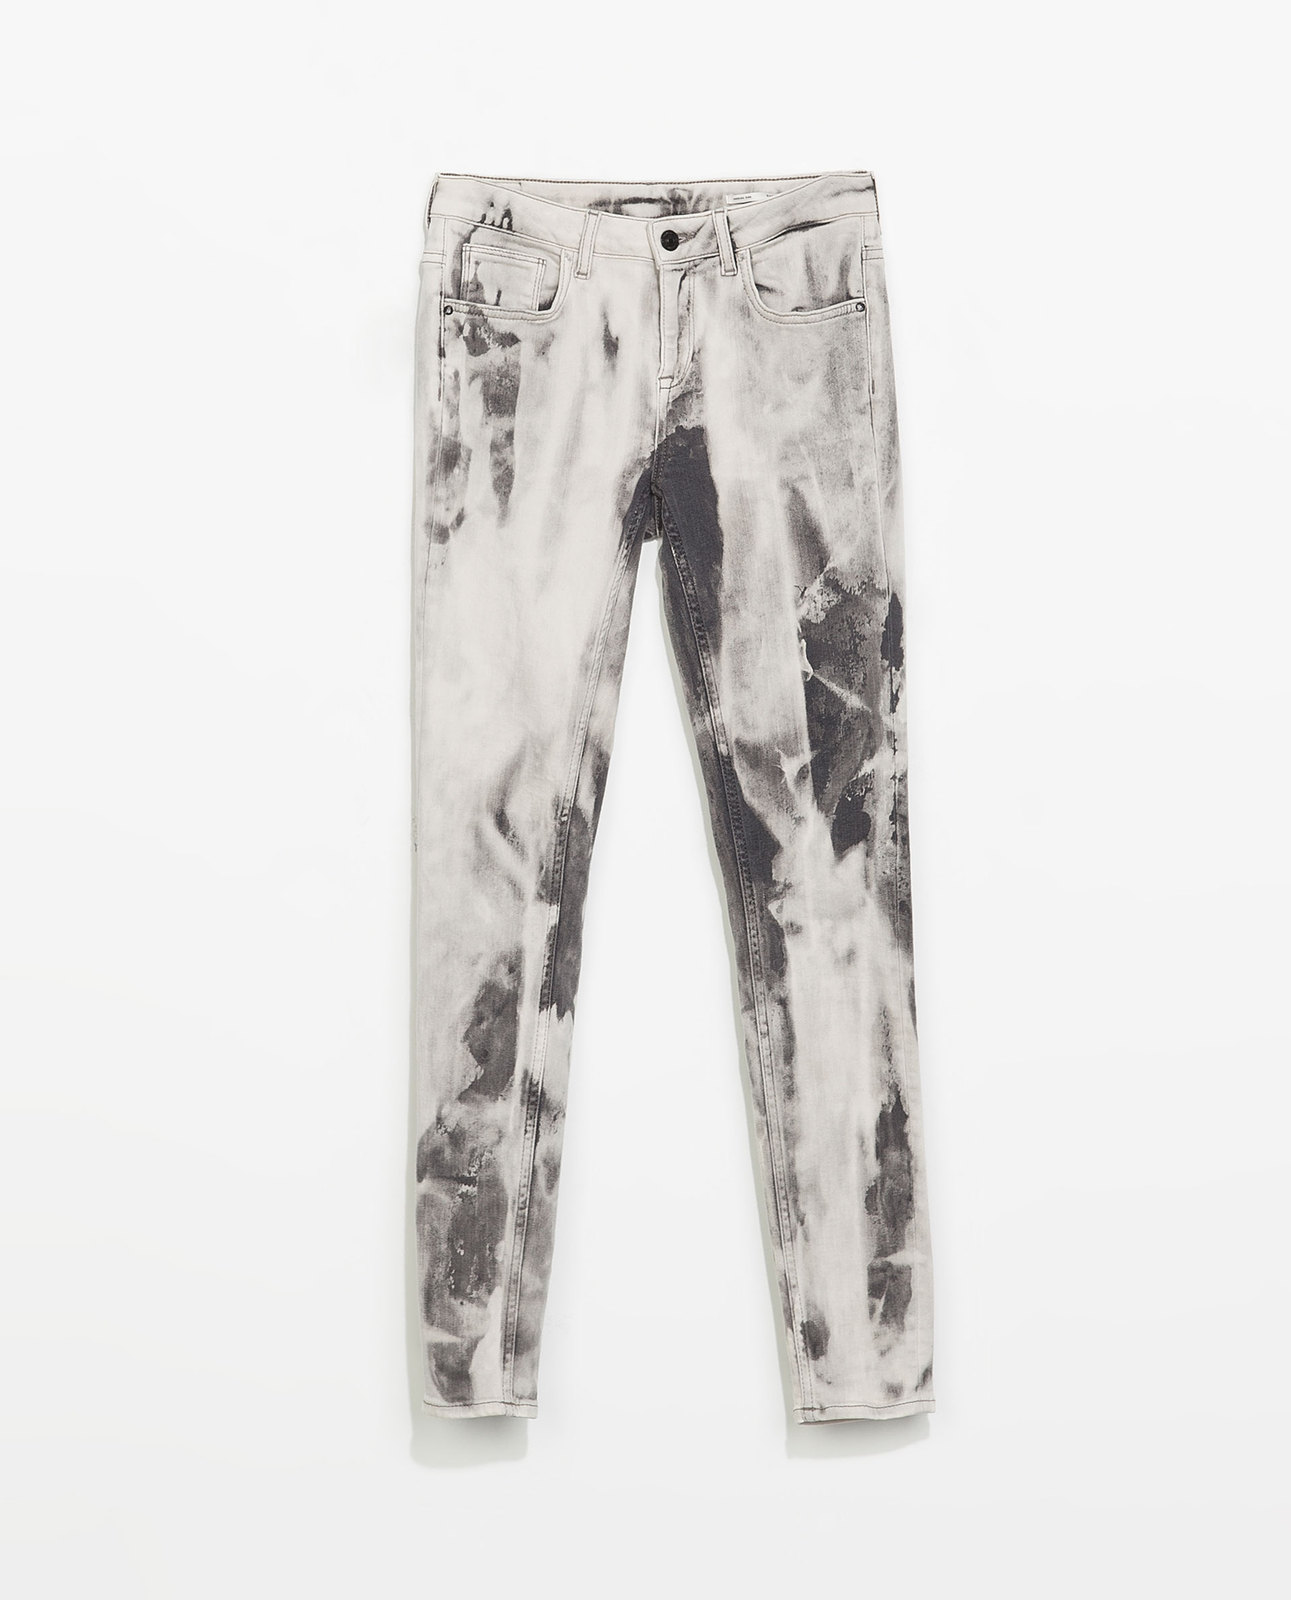 Zara tie-dye jeans 2014.4.15 #56510 fotója